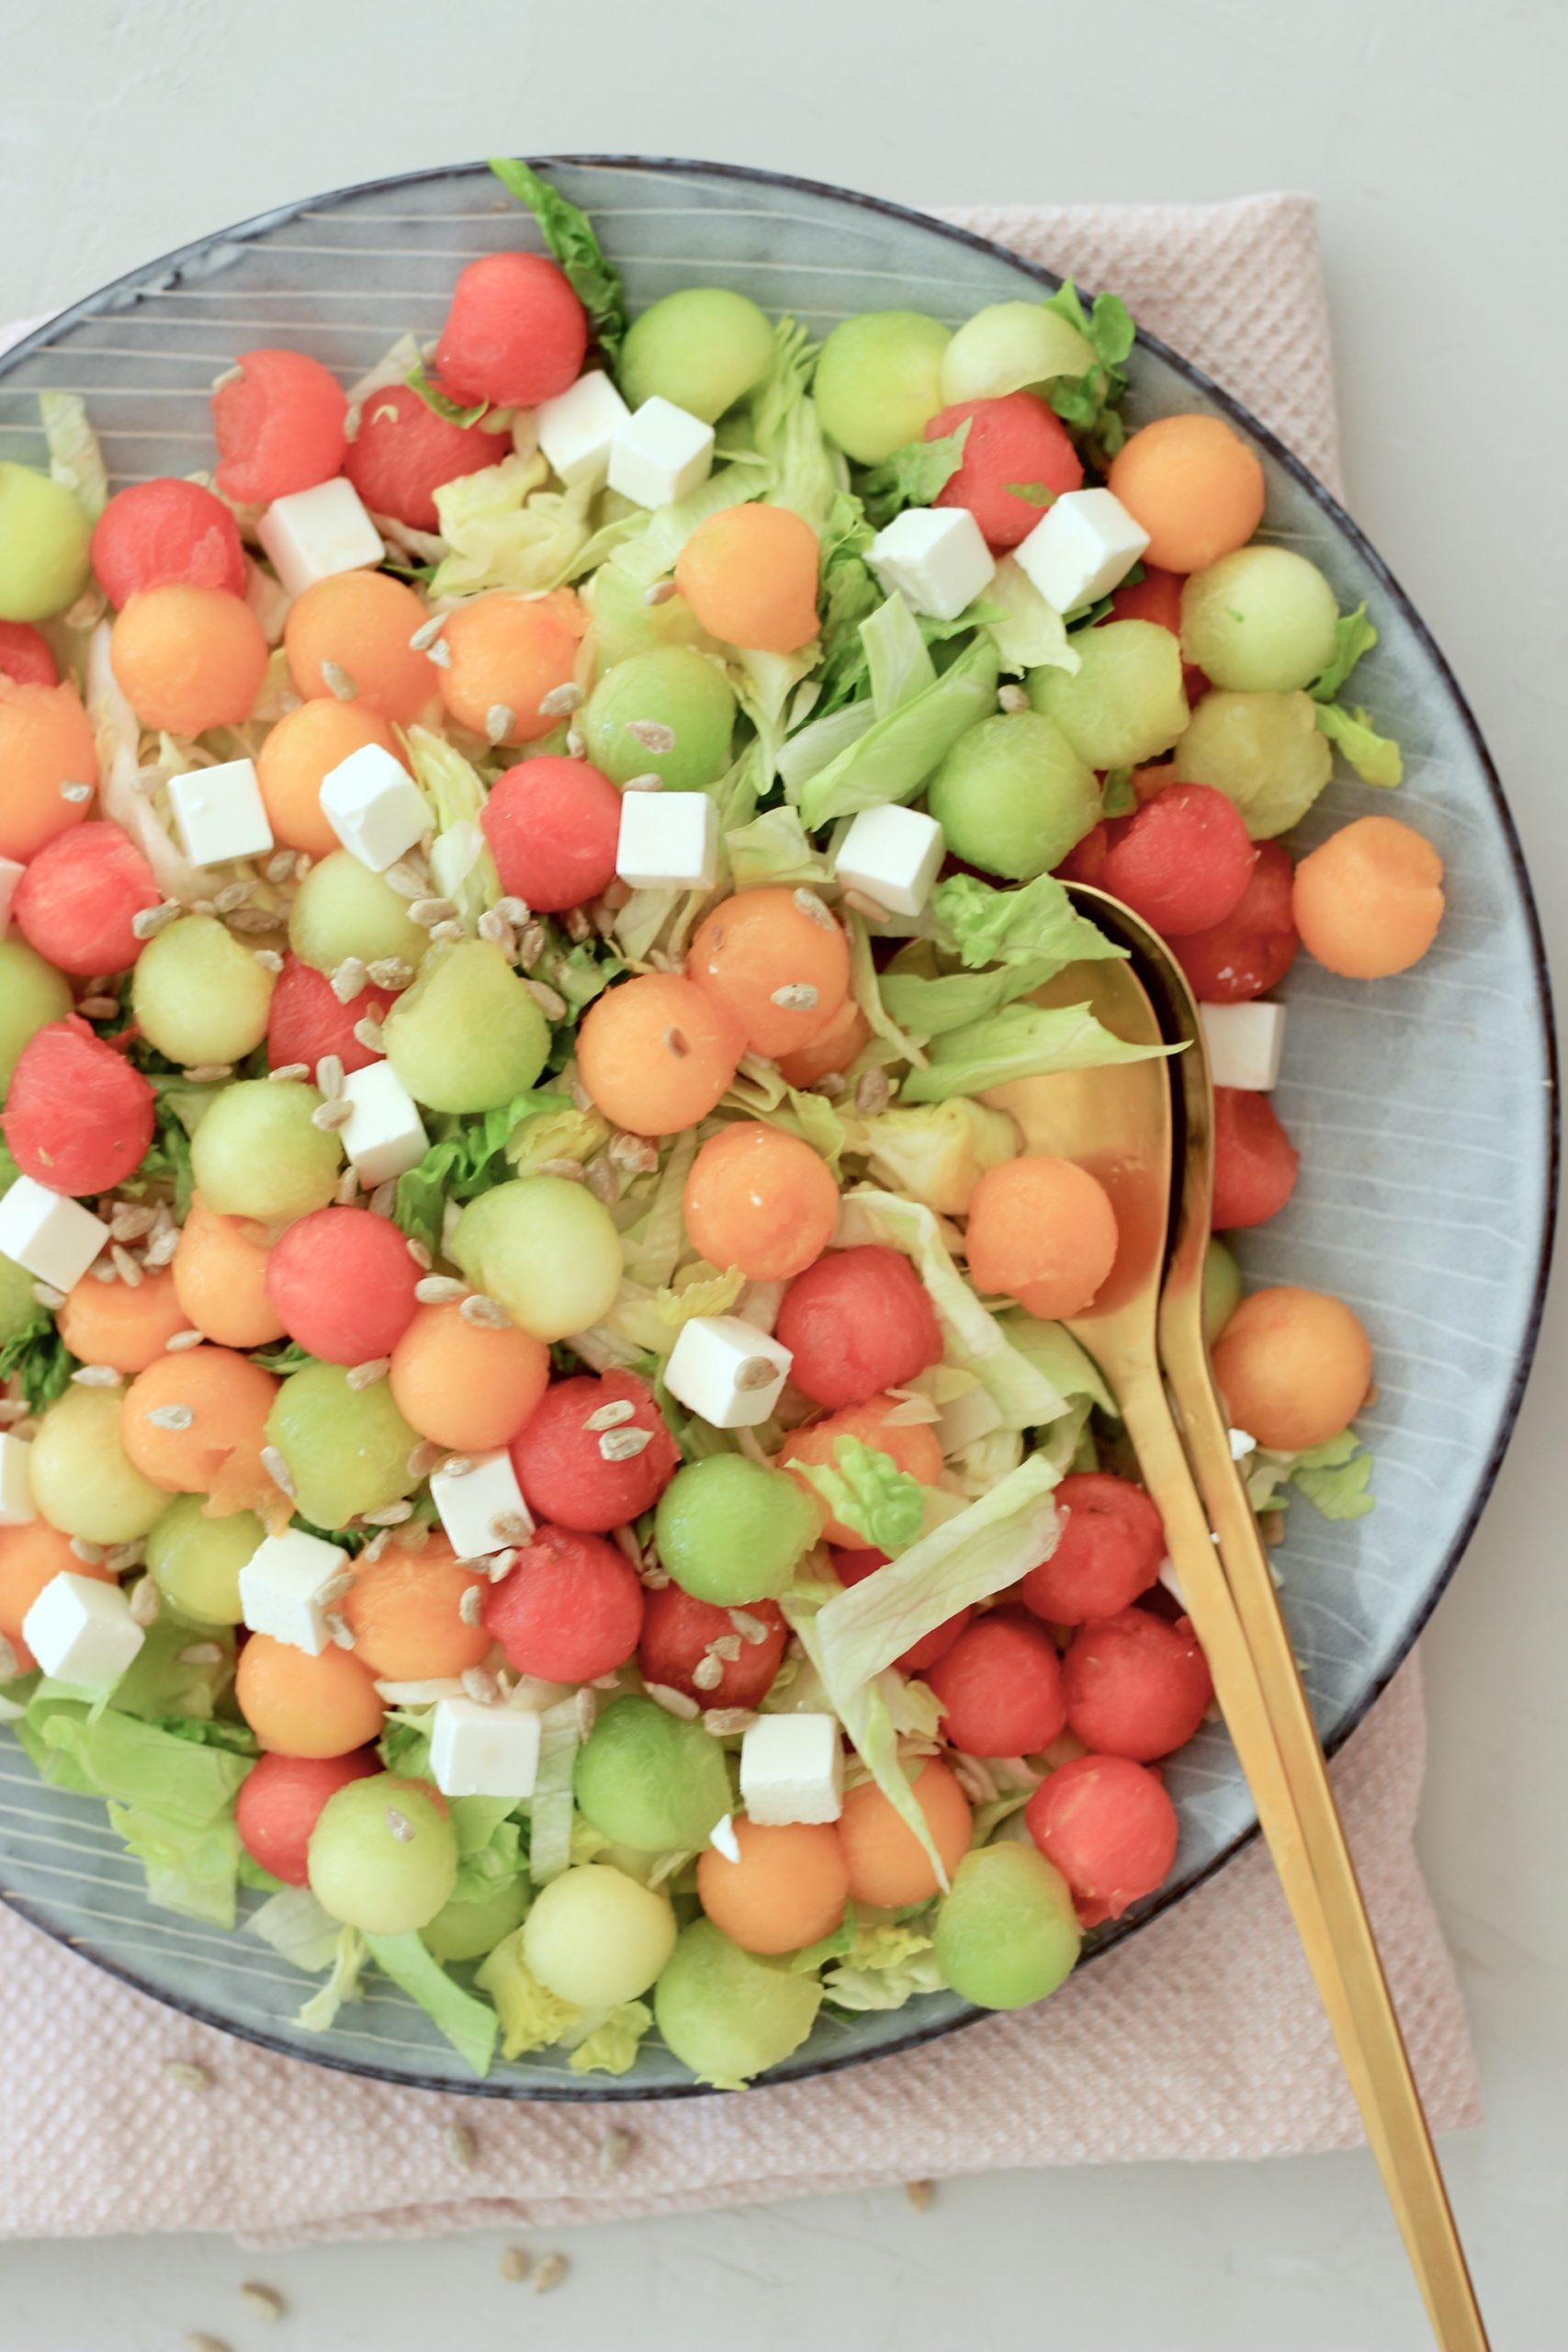 Aftensmad Ride Indsigt Melonsalat - Sommer salat med tre slags meloner